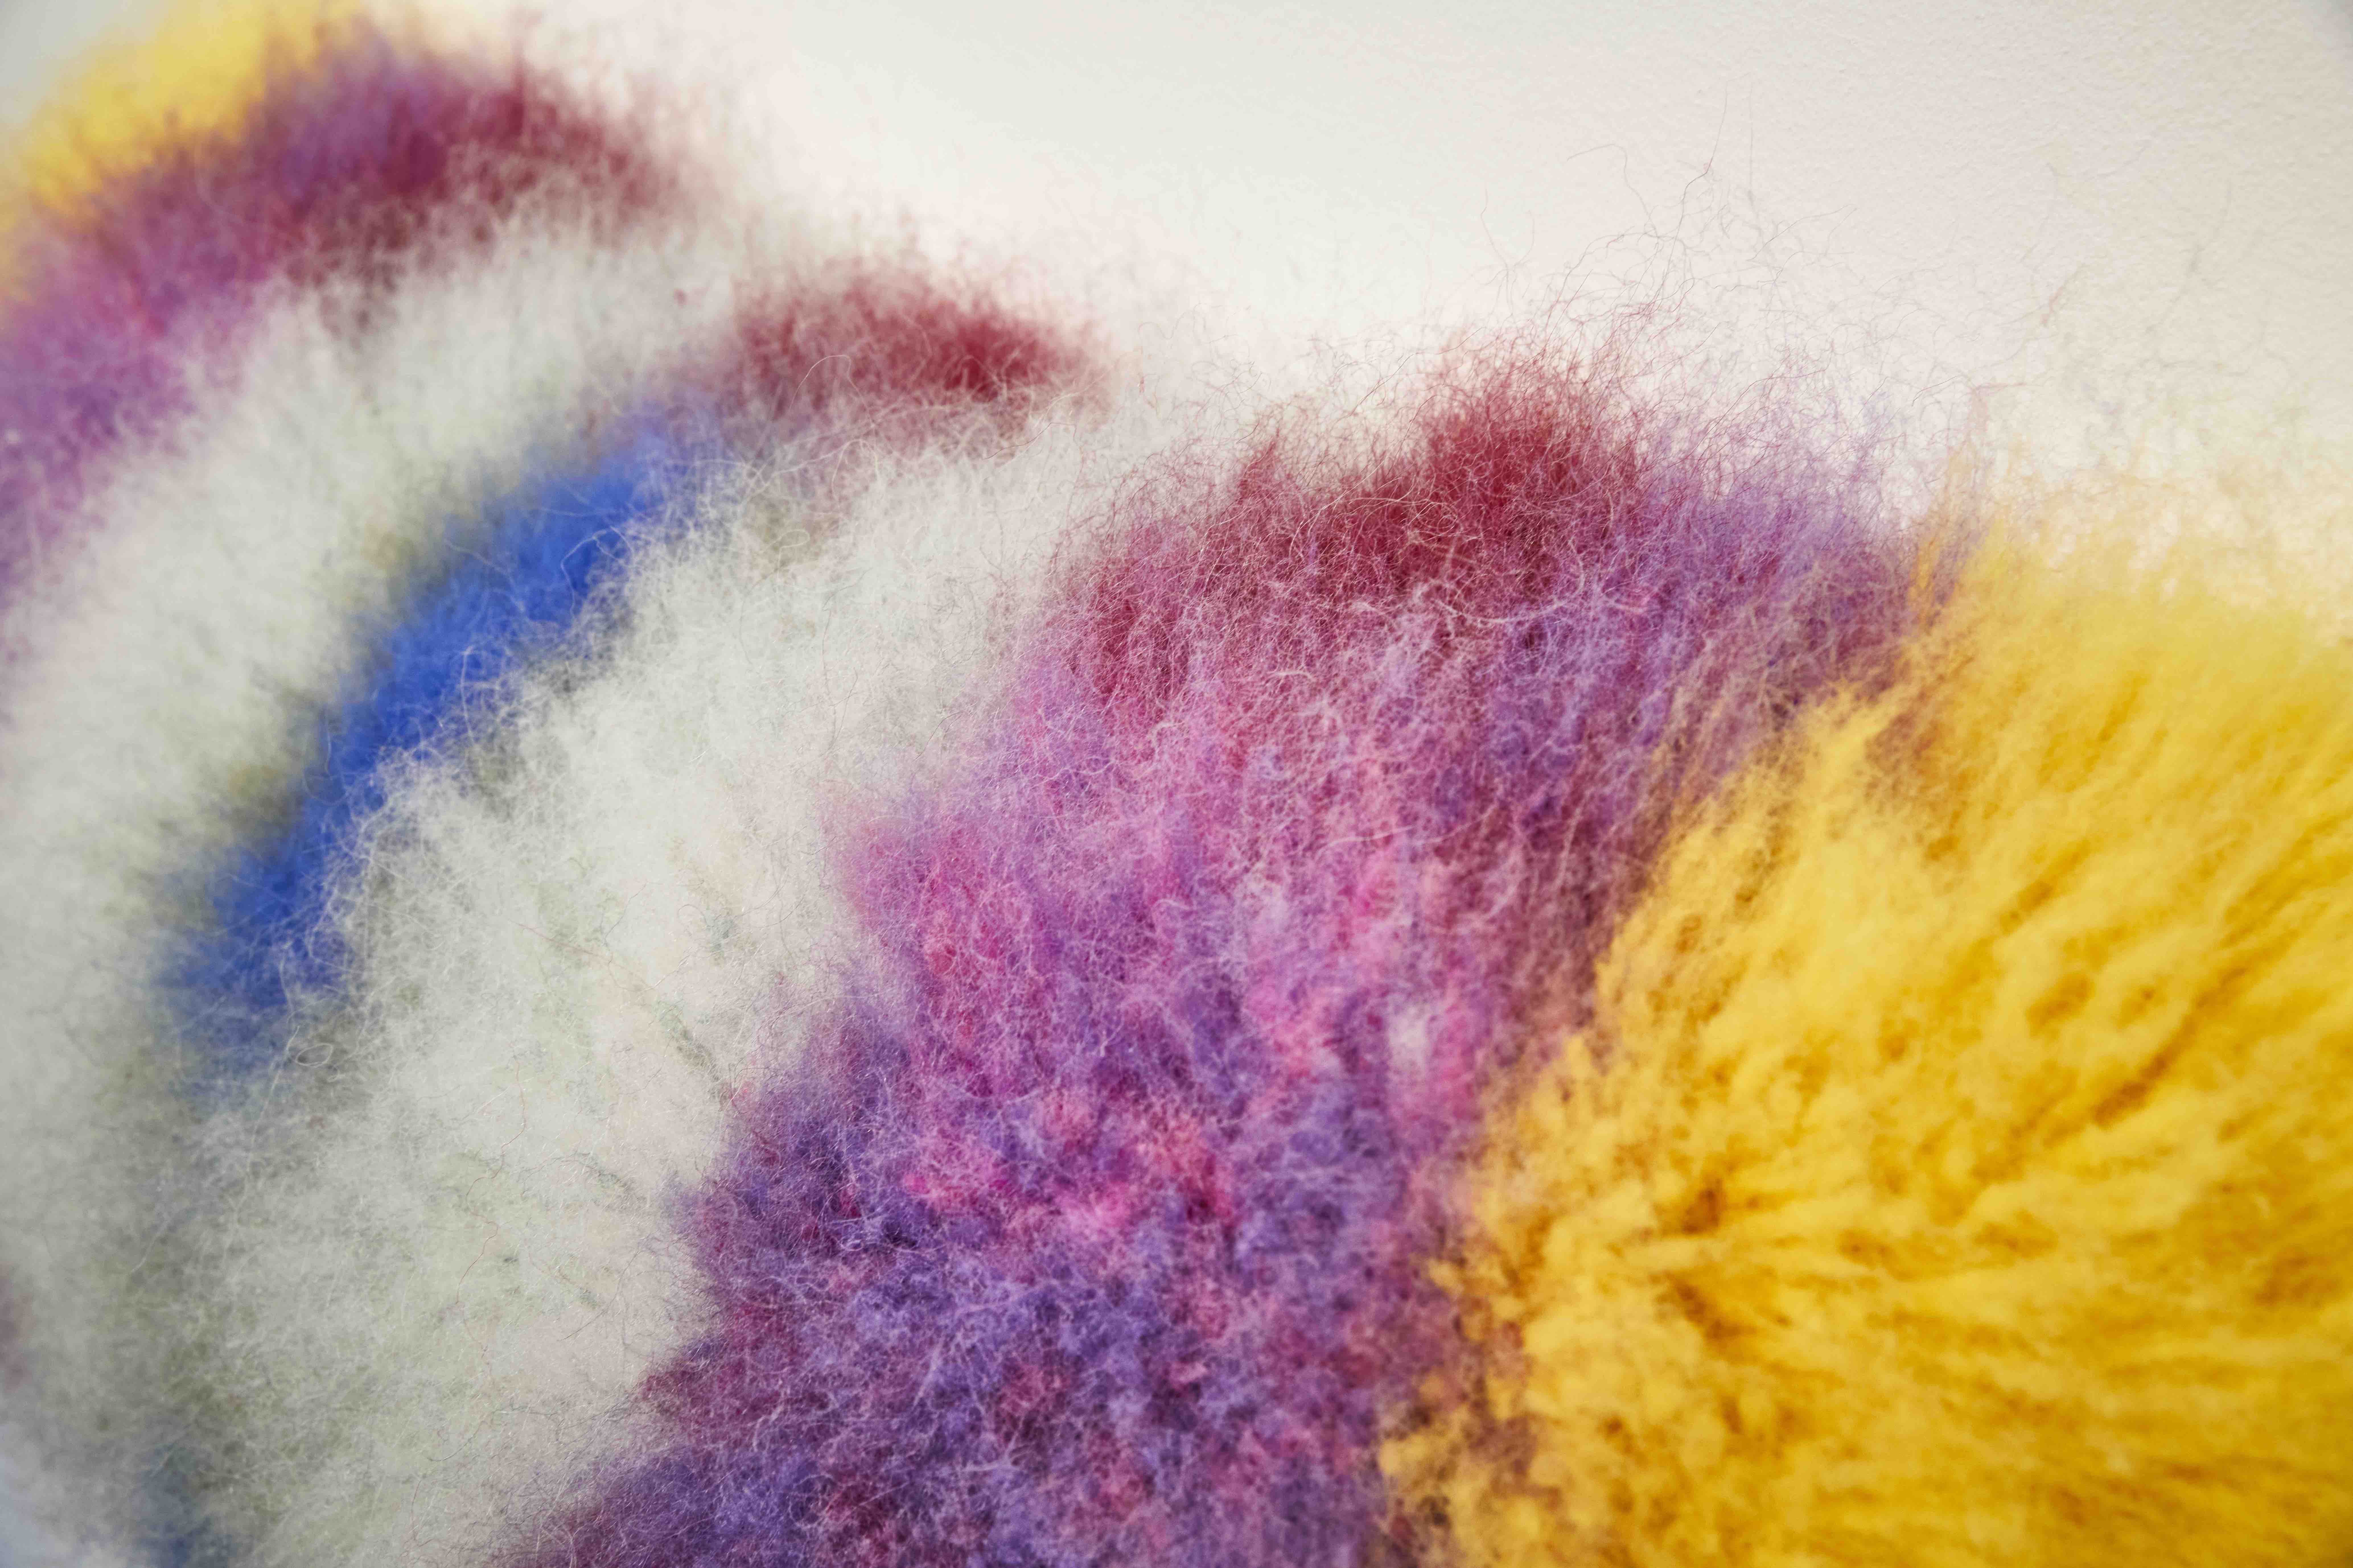 2019-2020
Icelandic un-spun wool and cotton warp
95 x 50 x 26 cm
Unique piece